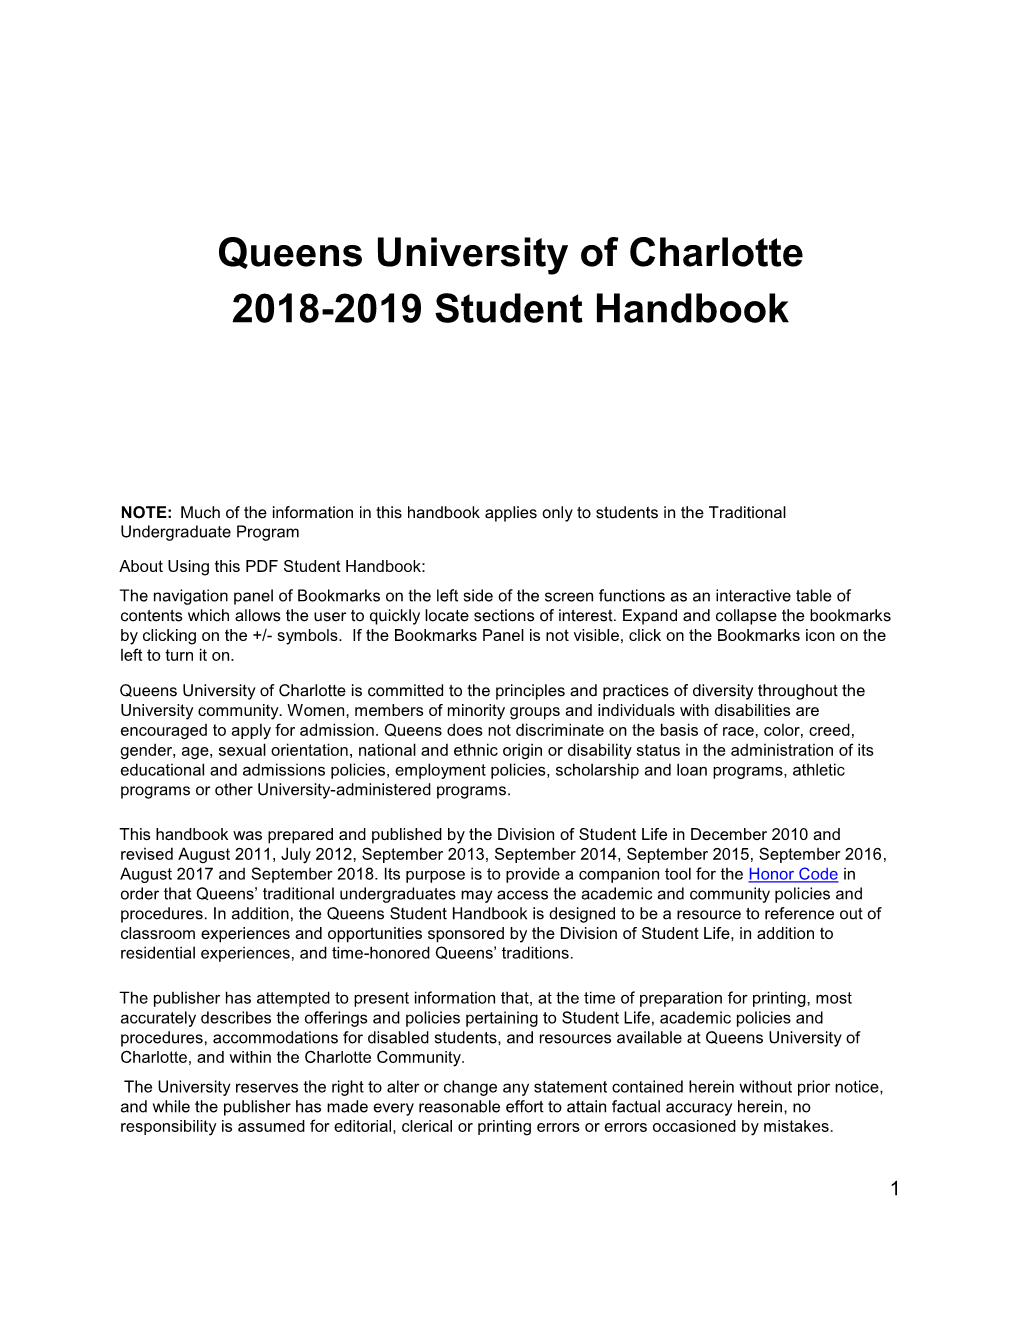 Queens University of Charlotte 2018-2019 Student Handbook